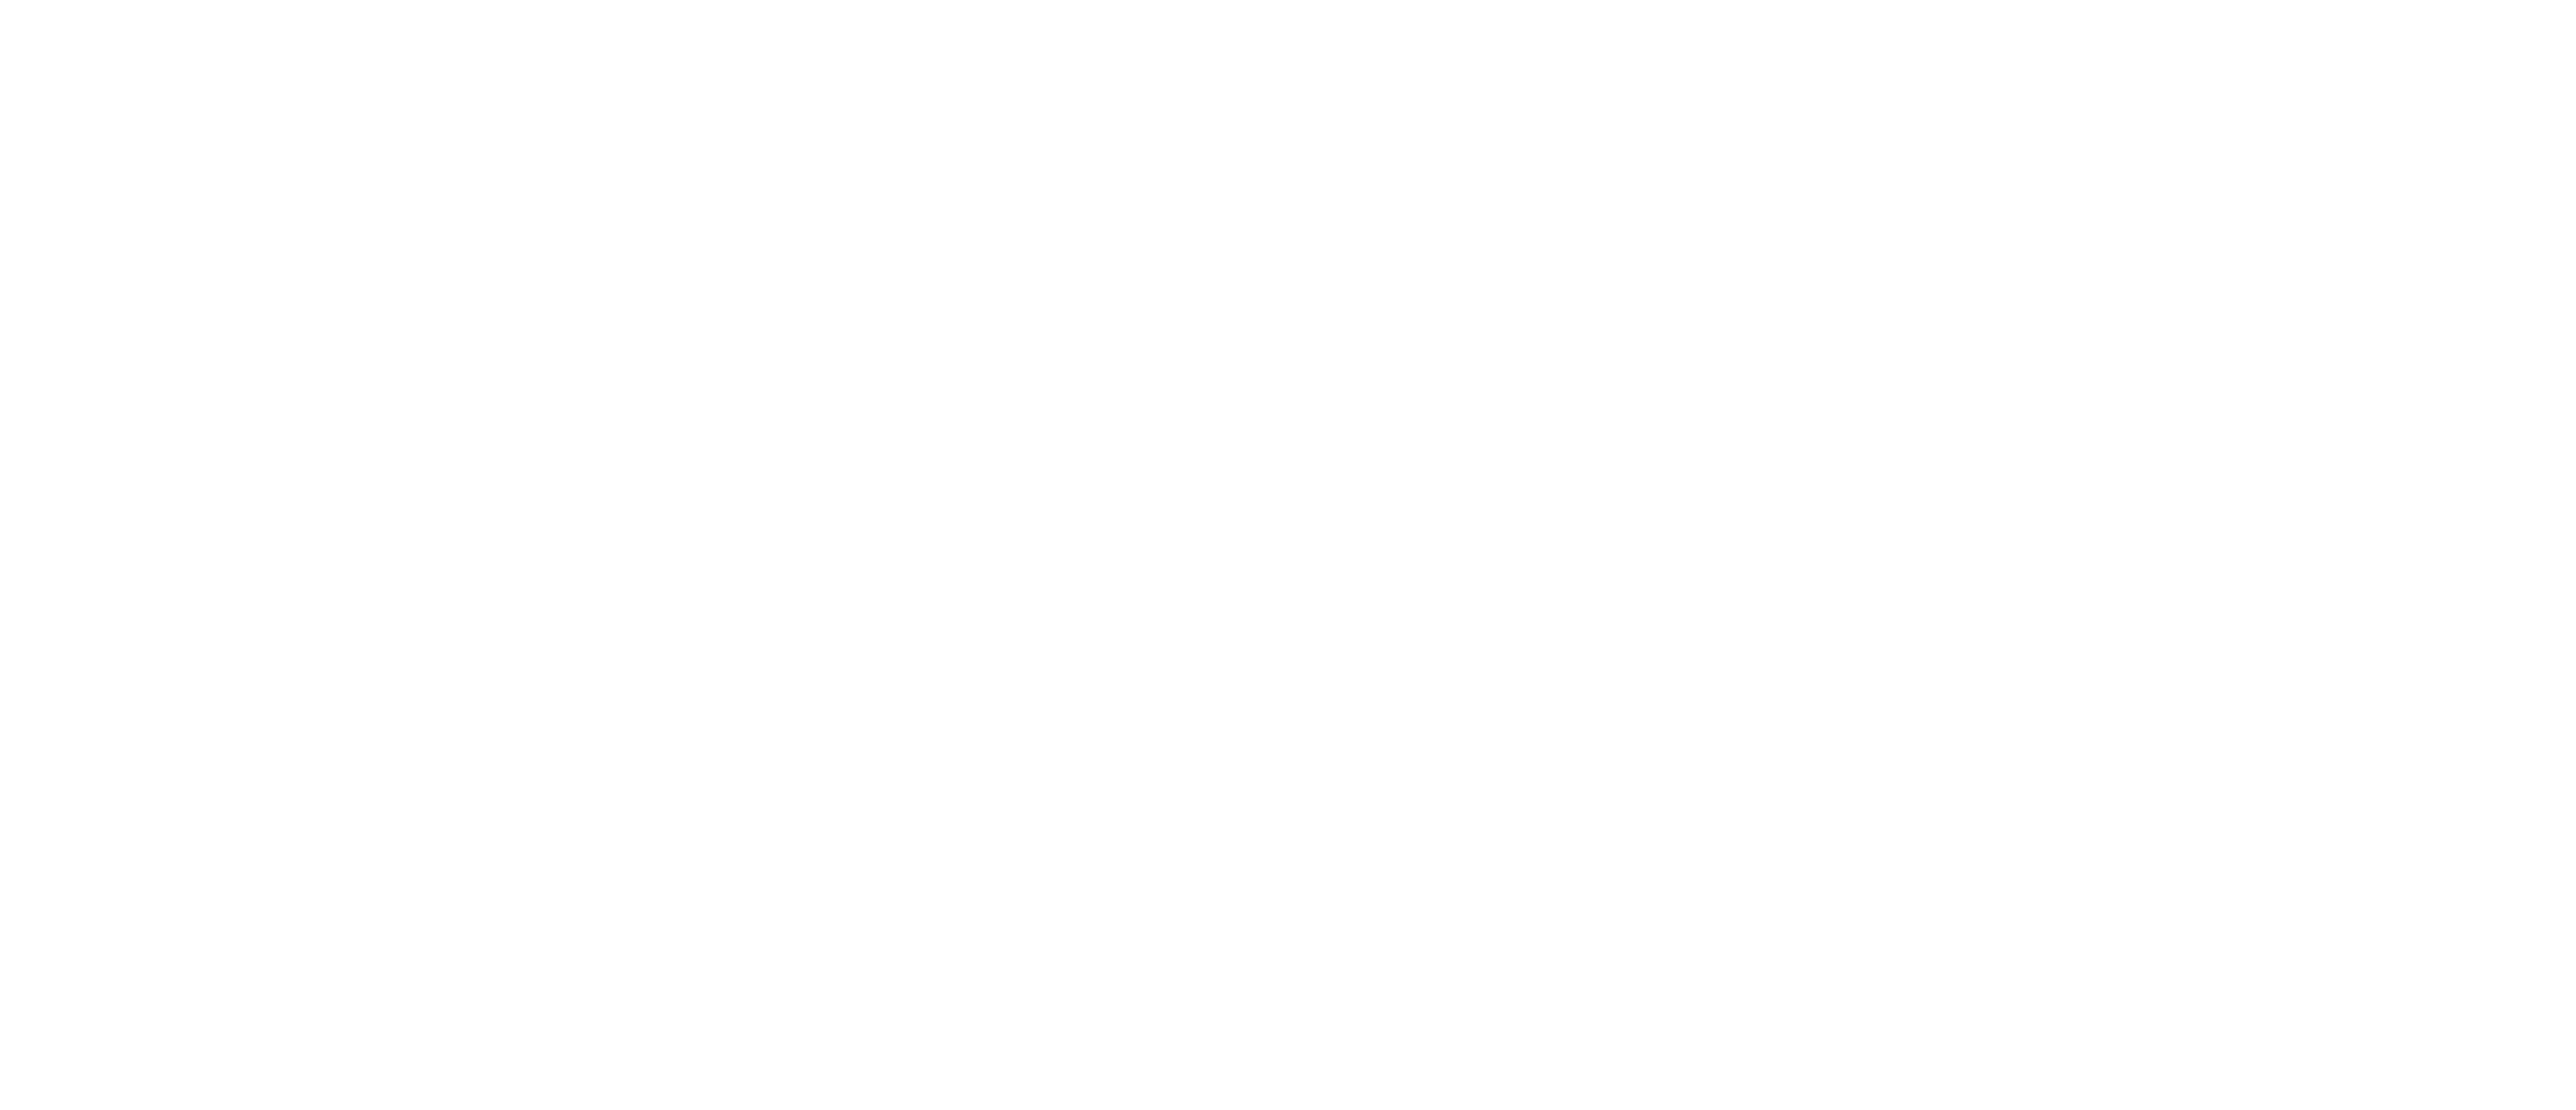 Premium Megastructures Inc.